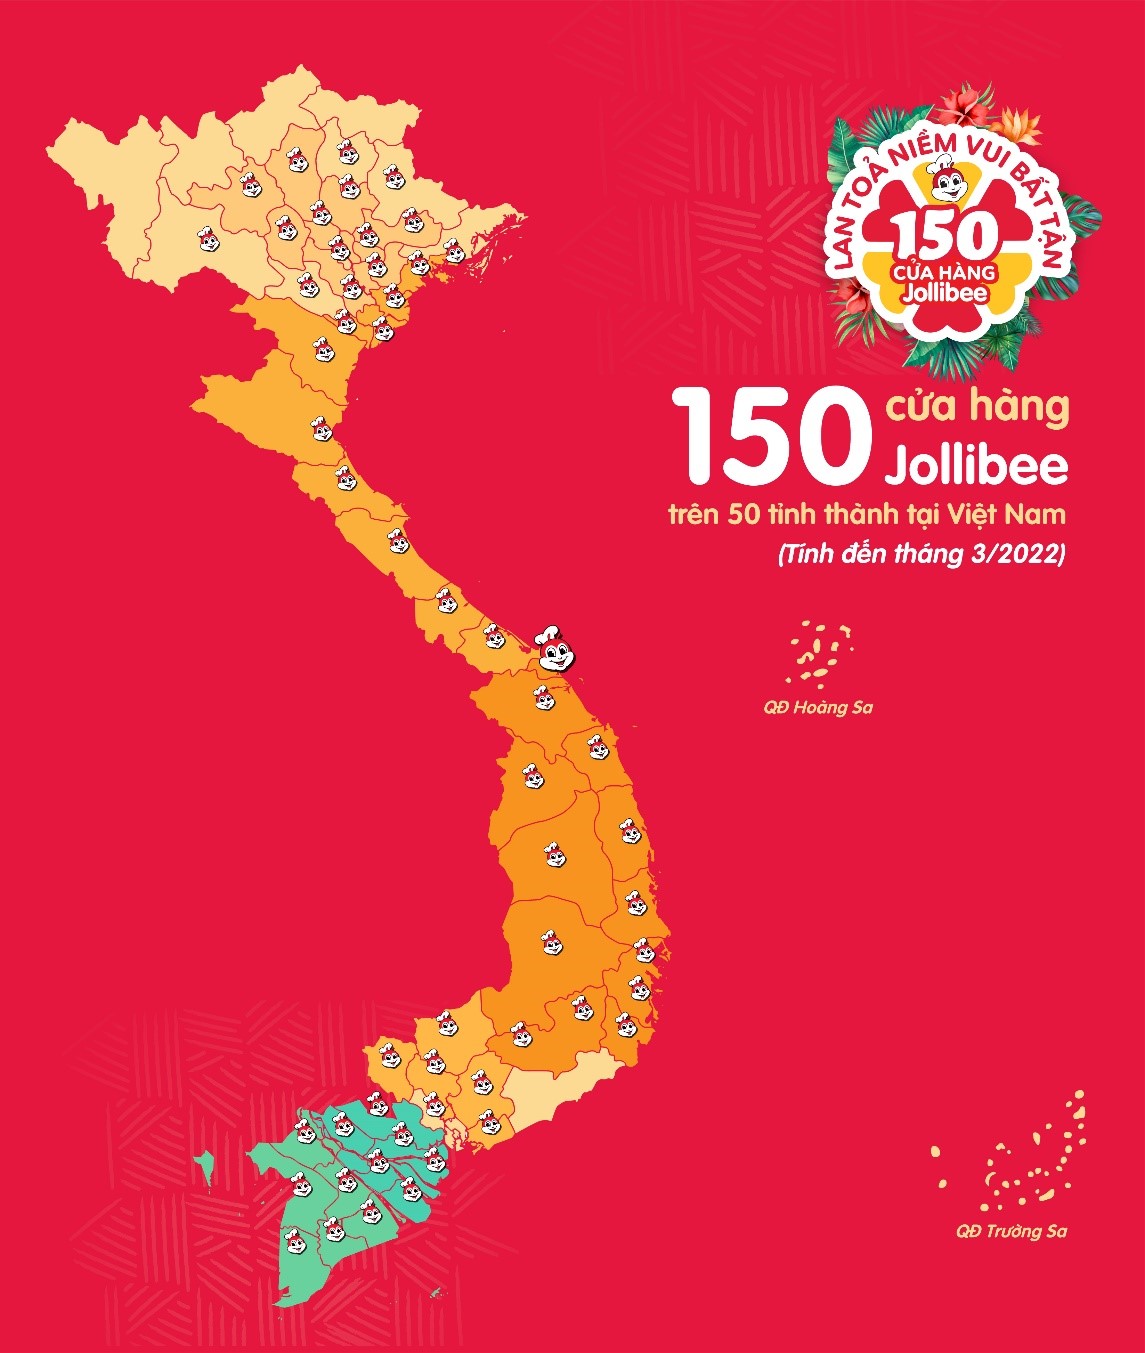 Jollibee sắp khai trương cửa hàng thứ 7 tại Đà Nẵng, thứ 150 ở Việt Nam - ảnh 1